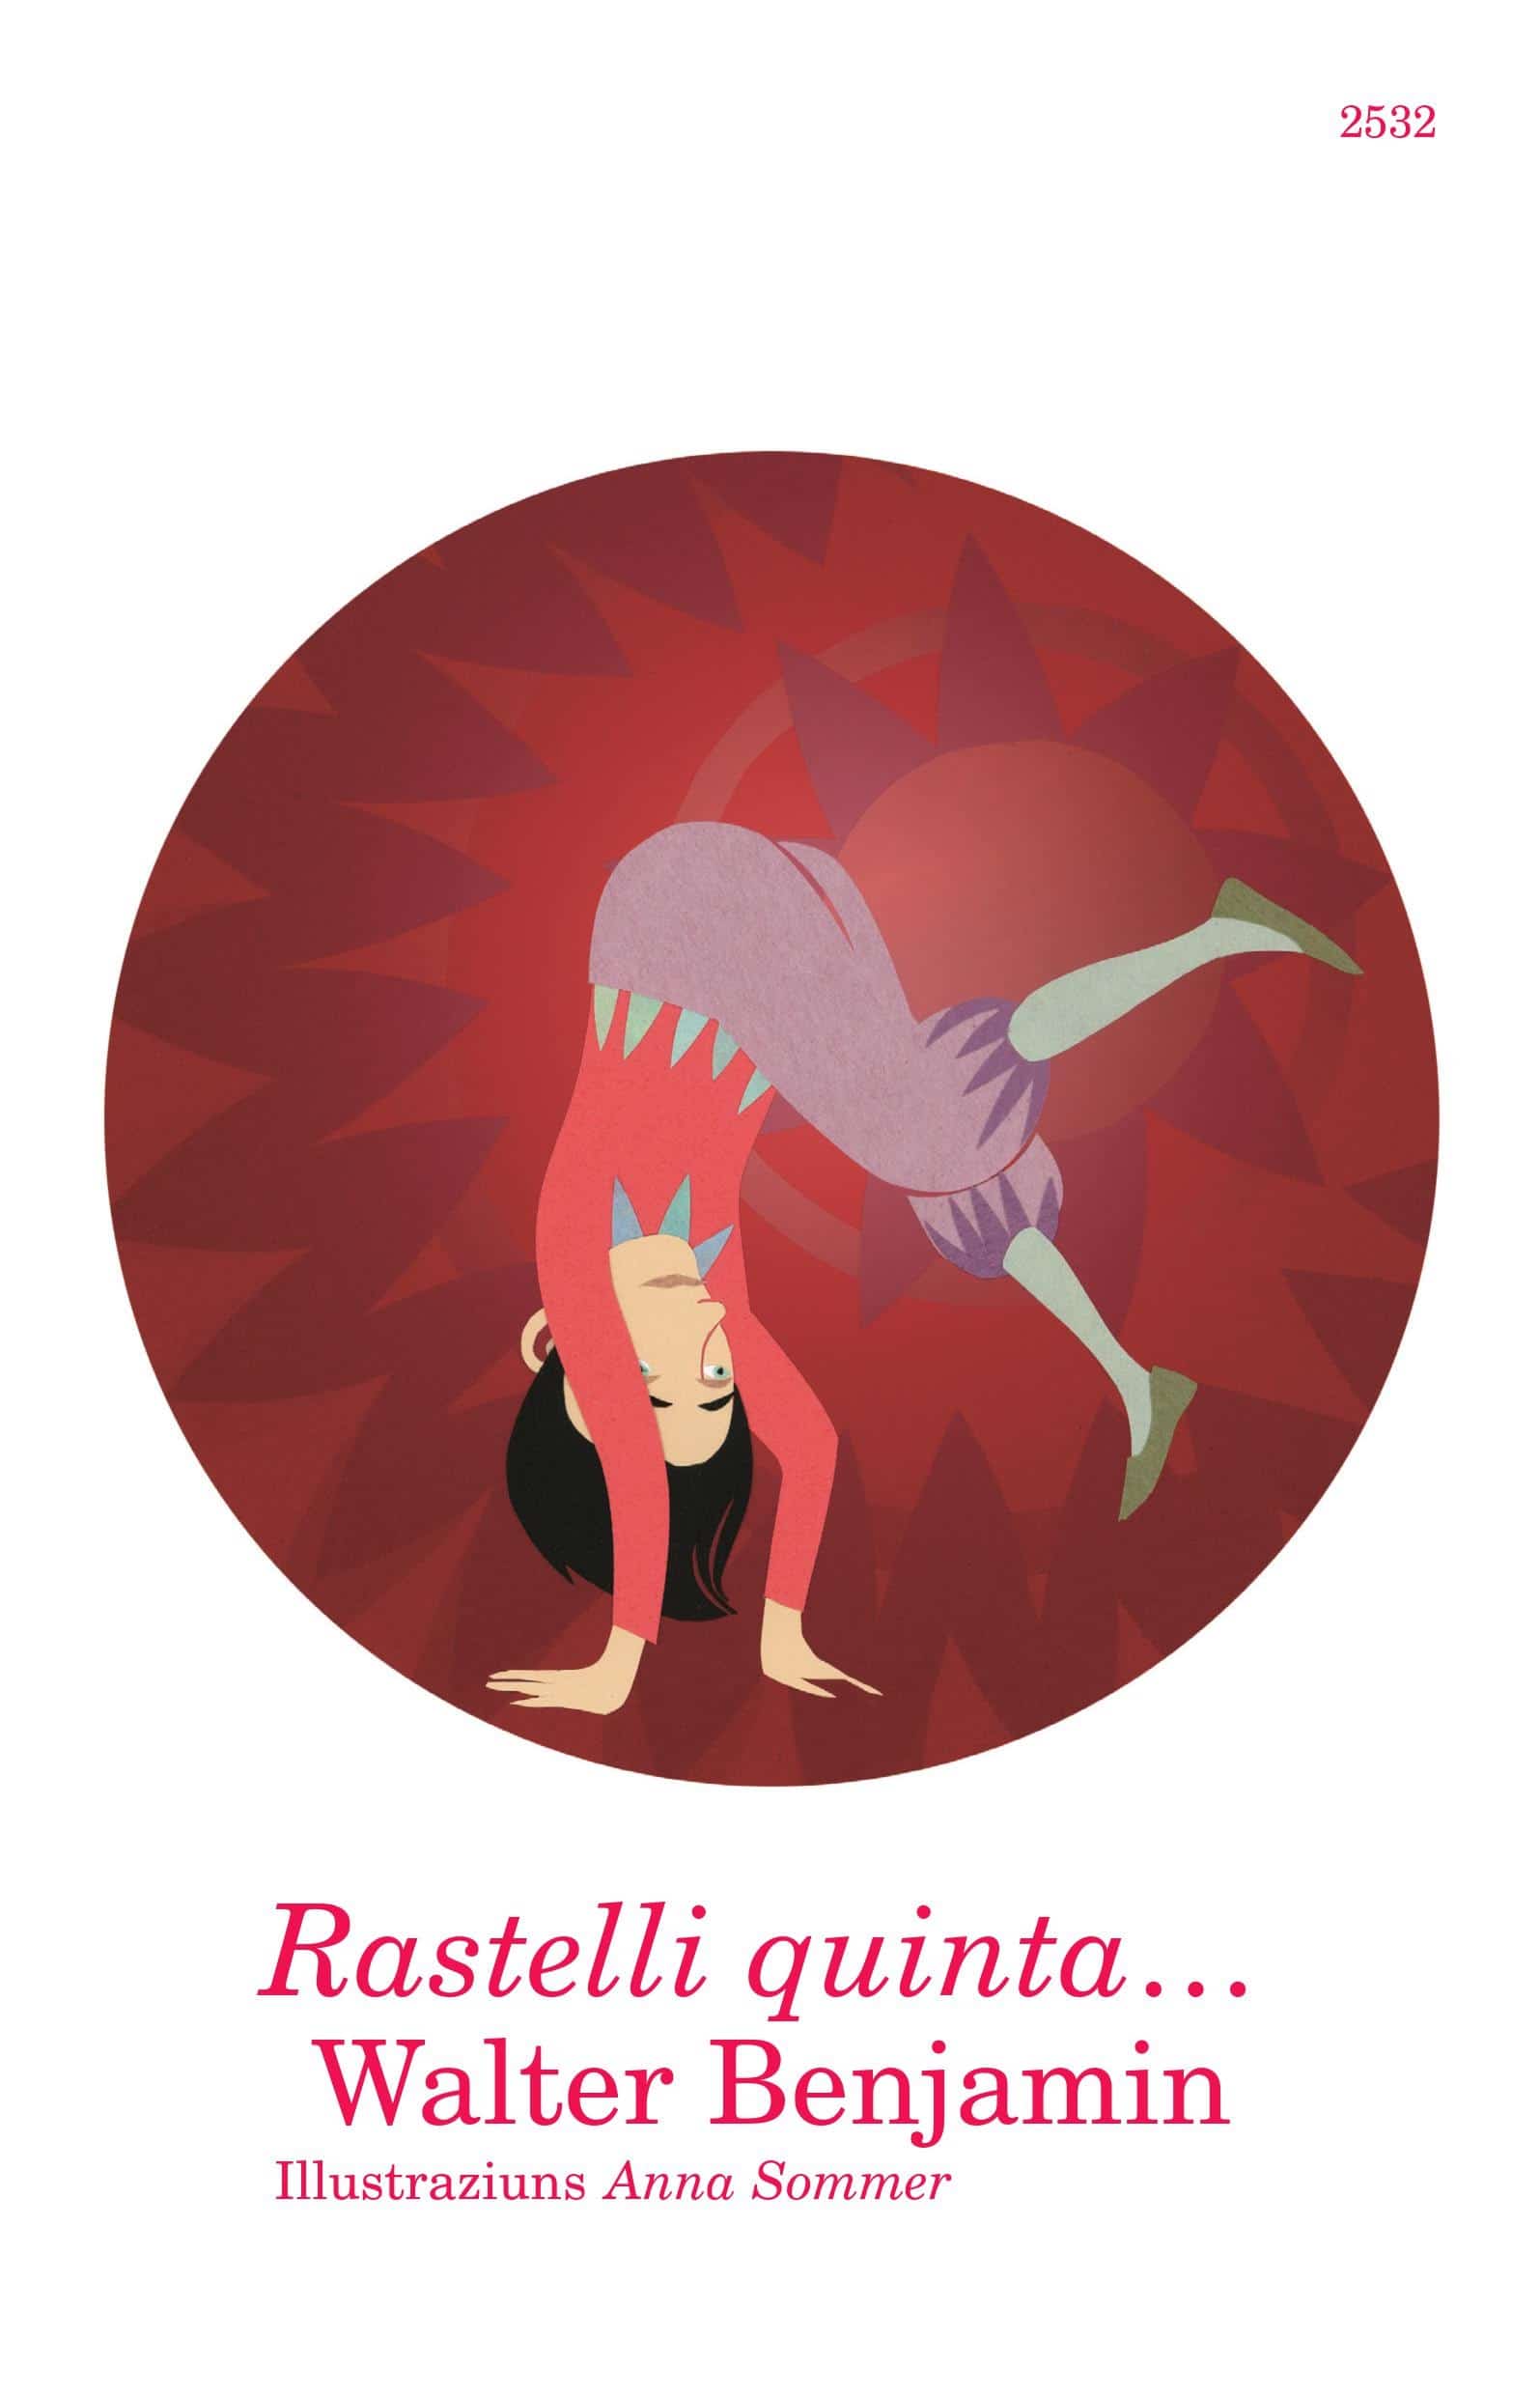 Rastelli quinta…, ein Buch von Walter Benjamin, Illustration von Anna Sommer, SJW Verlag, Weltliteratur, Klassiker